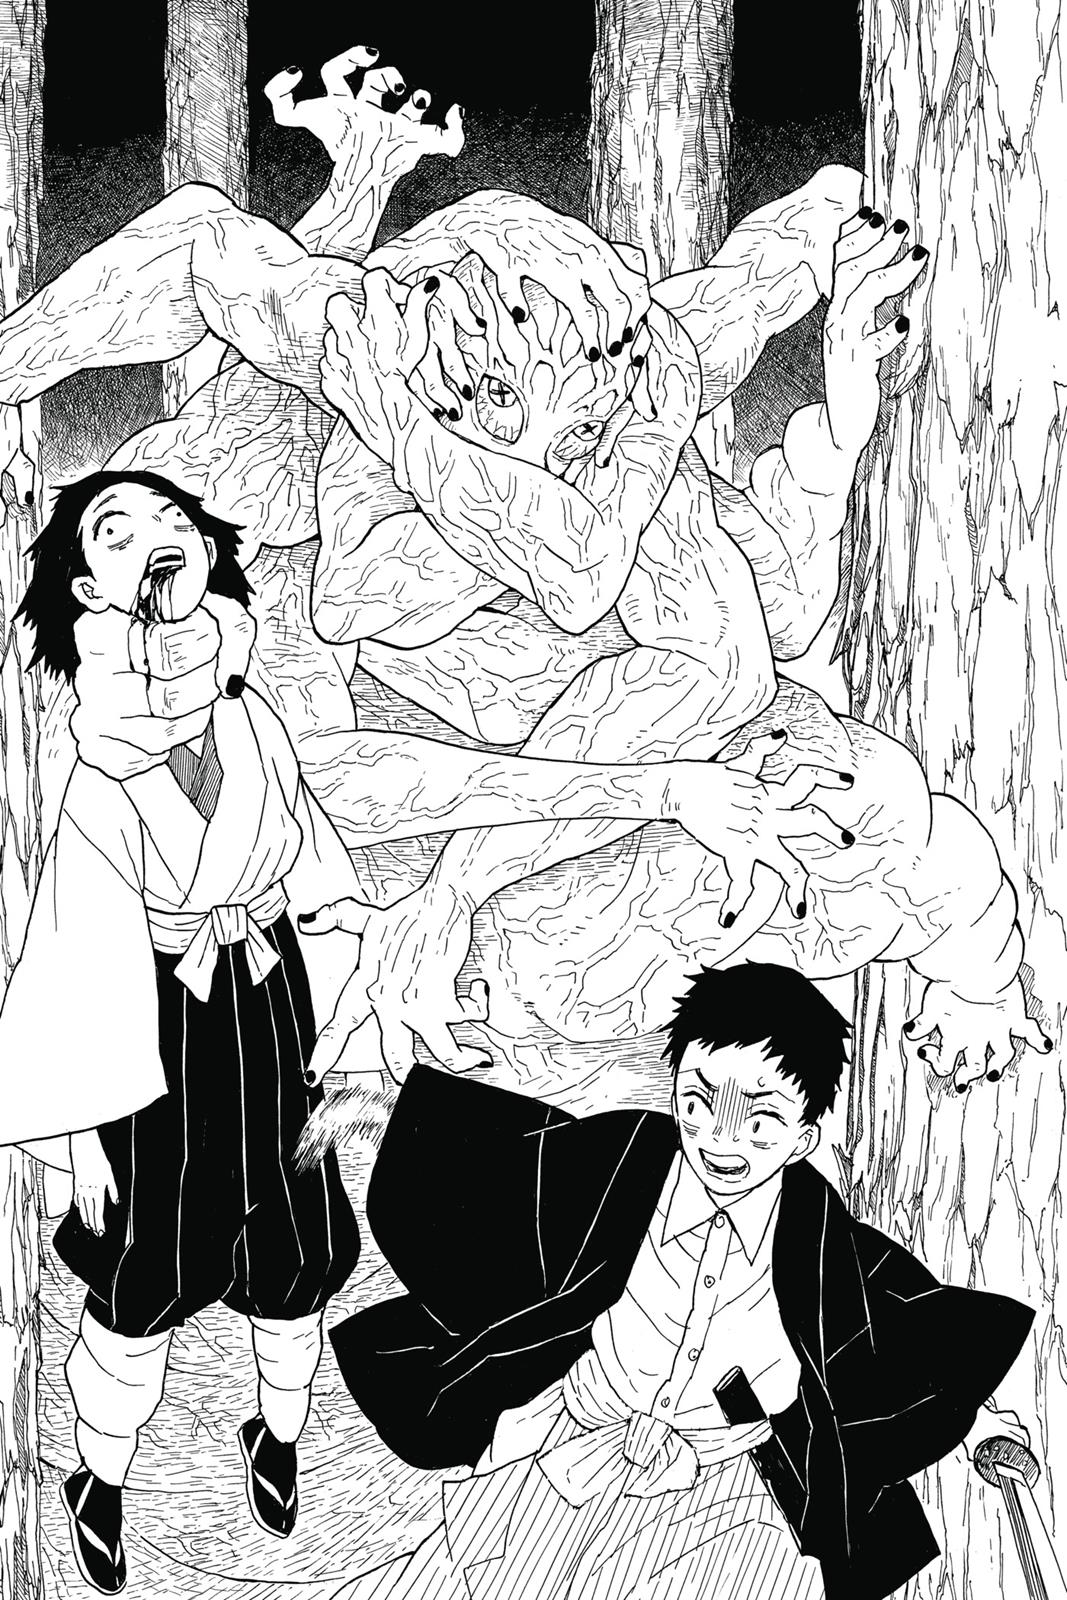 Demon Slayer Manga Manga Chapter - 6 - image 7